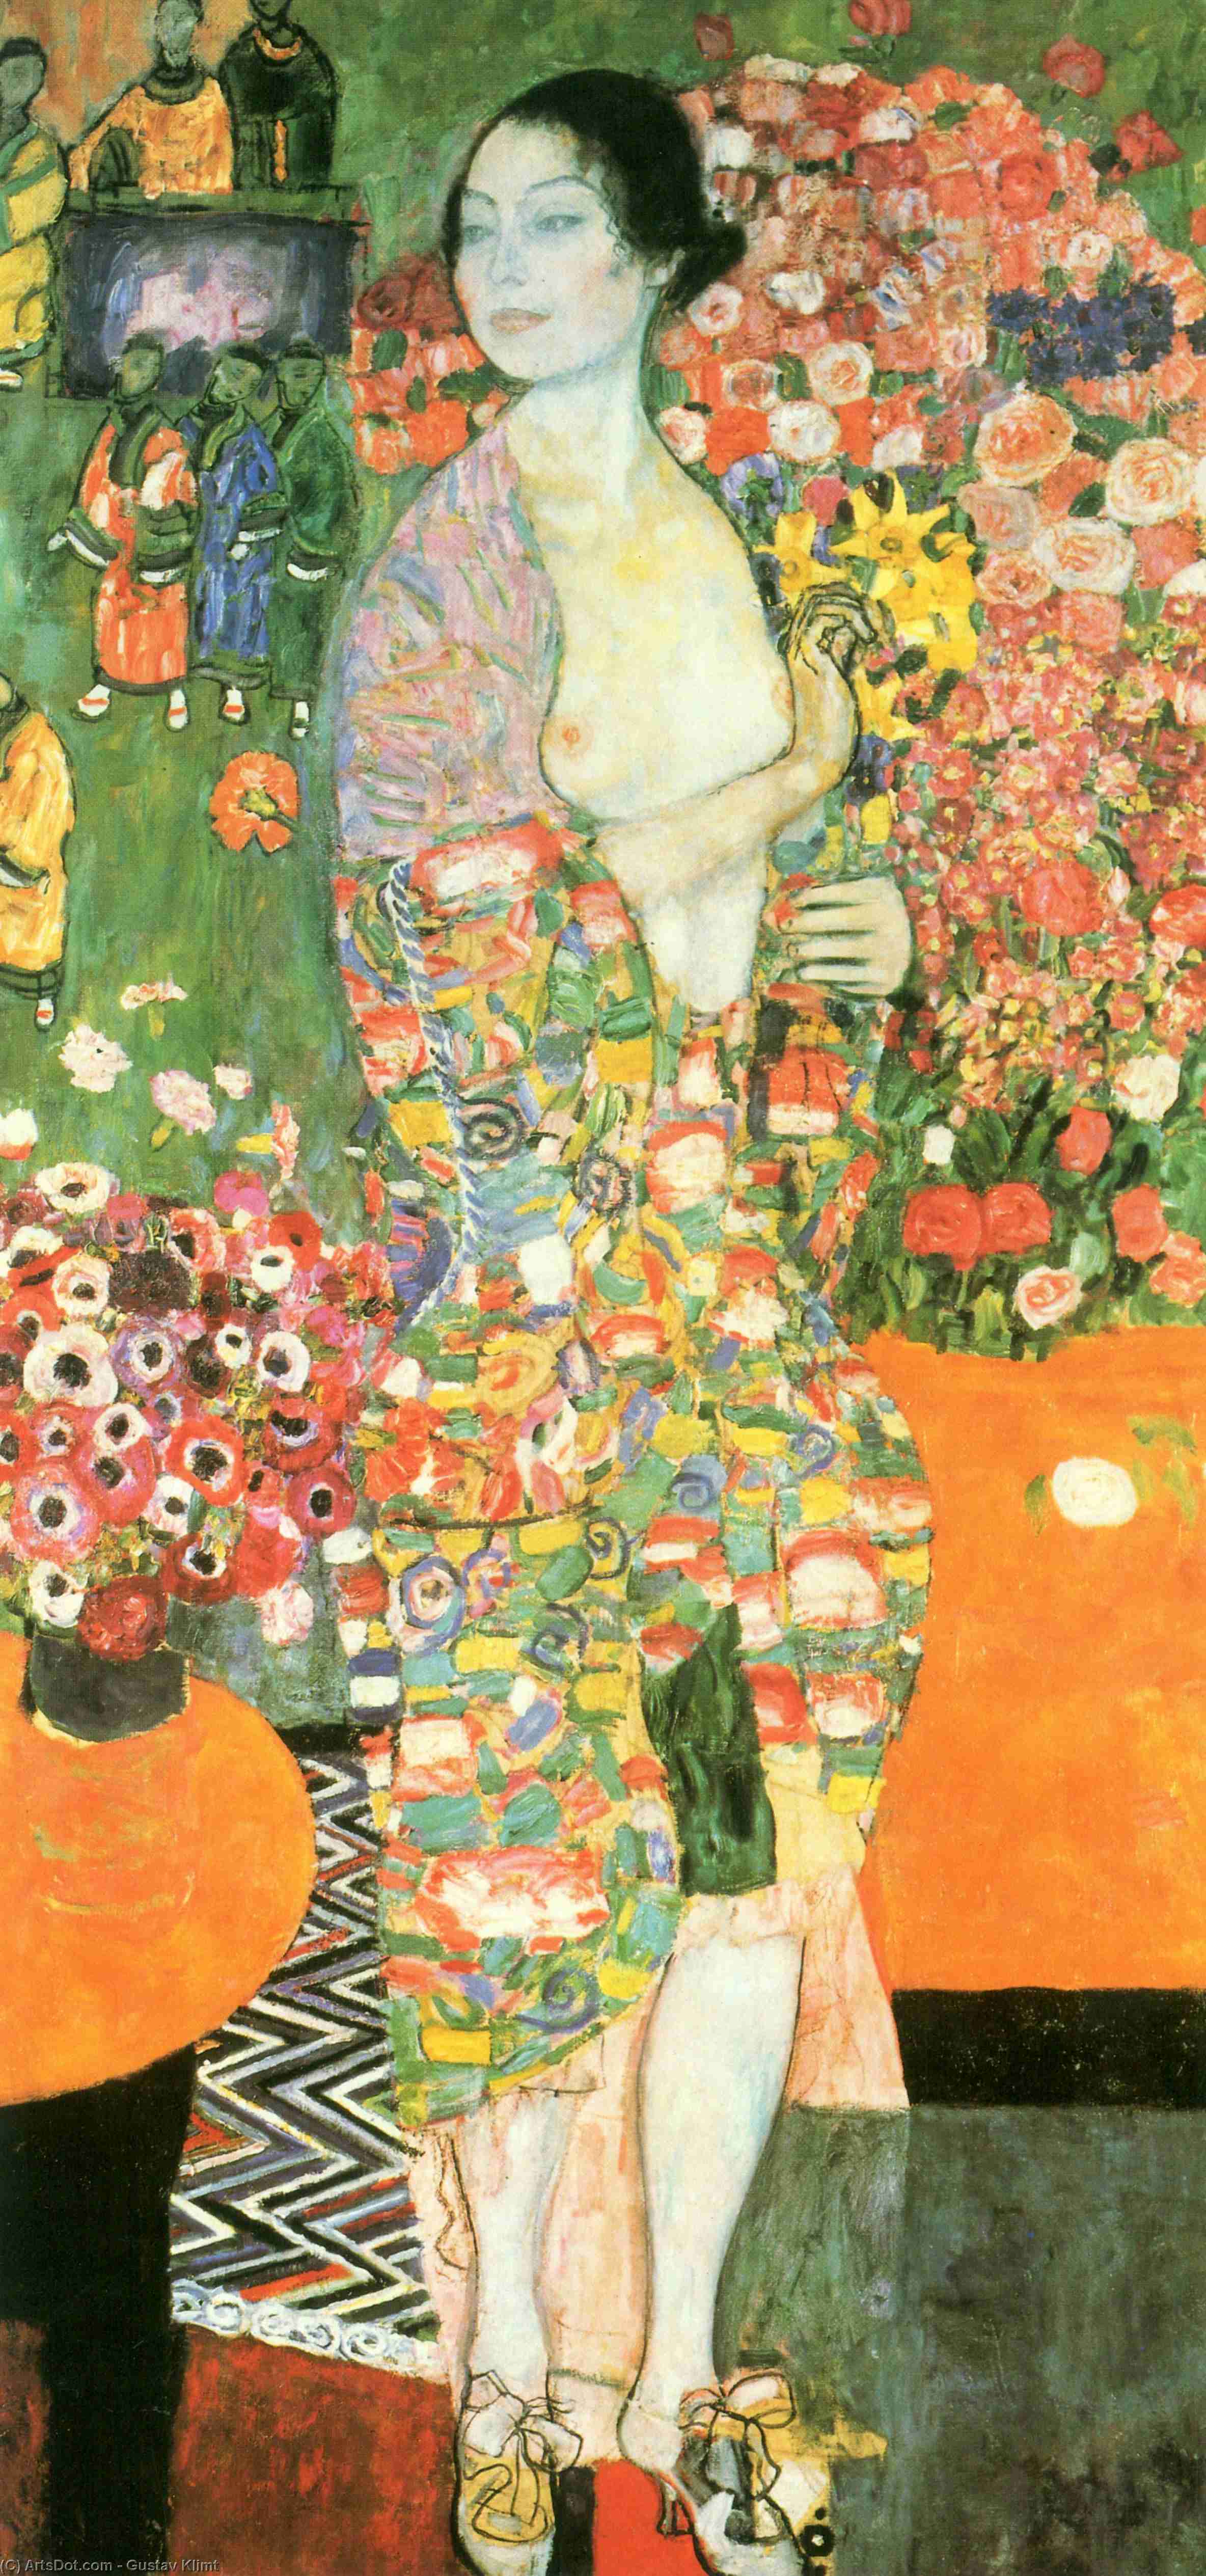 WikiOO.org - Энциклопедия изобразительного искусства - Живопись, Картины  Gustav Klimt - Танцор